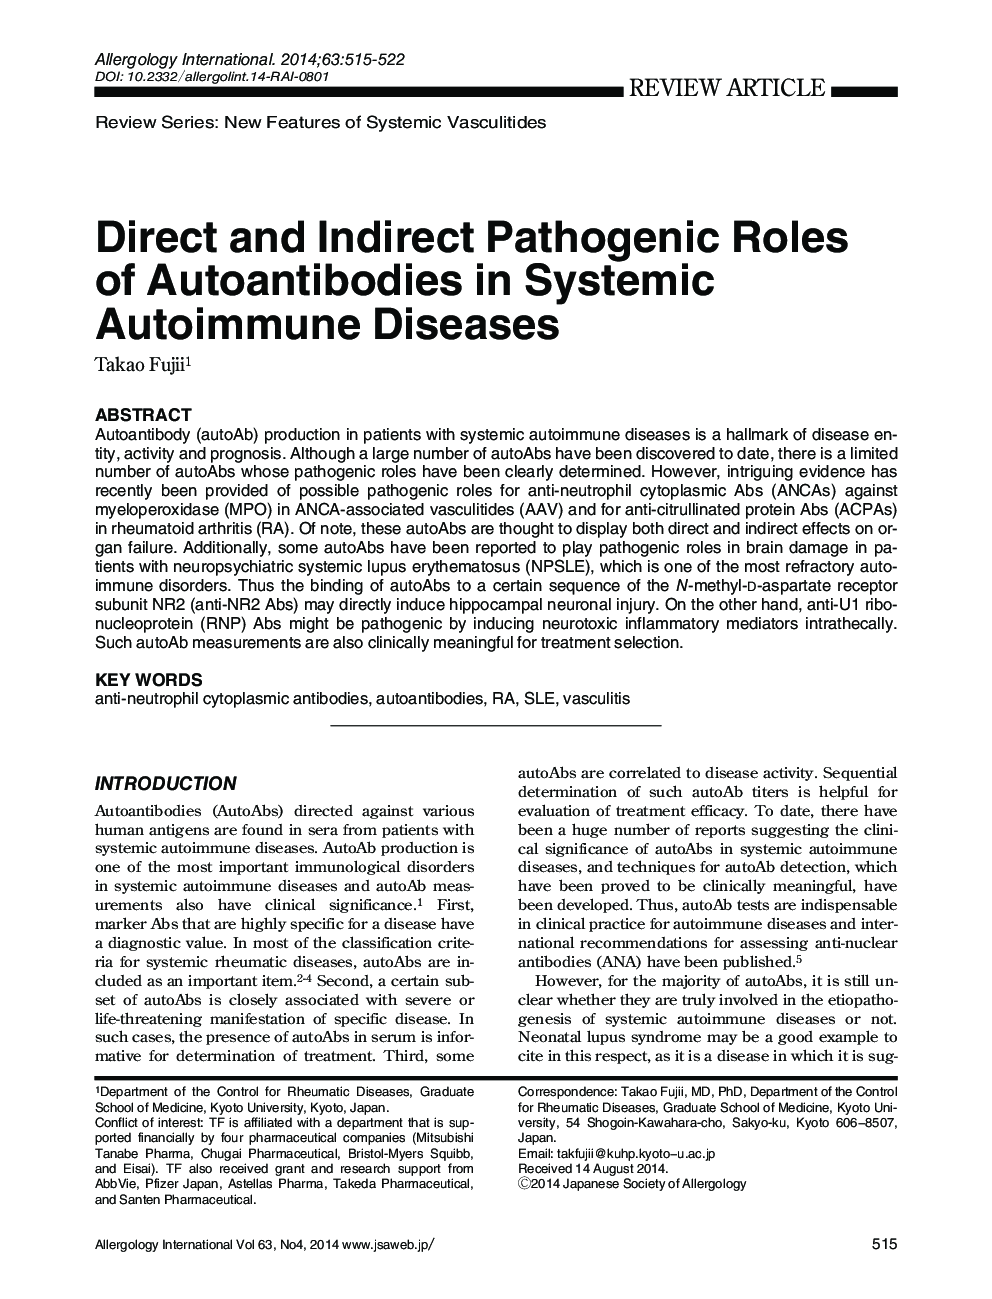 پاتوژن مستقیم و غیر مستقیم از آنتیبادی های خودکار در بیماری های خودایمنی سیستمیک 